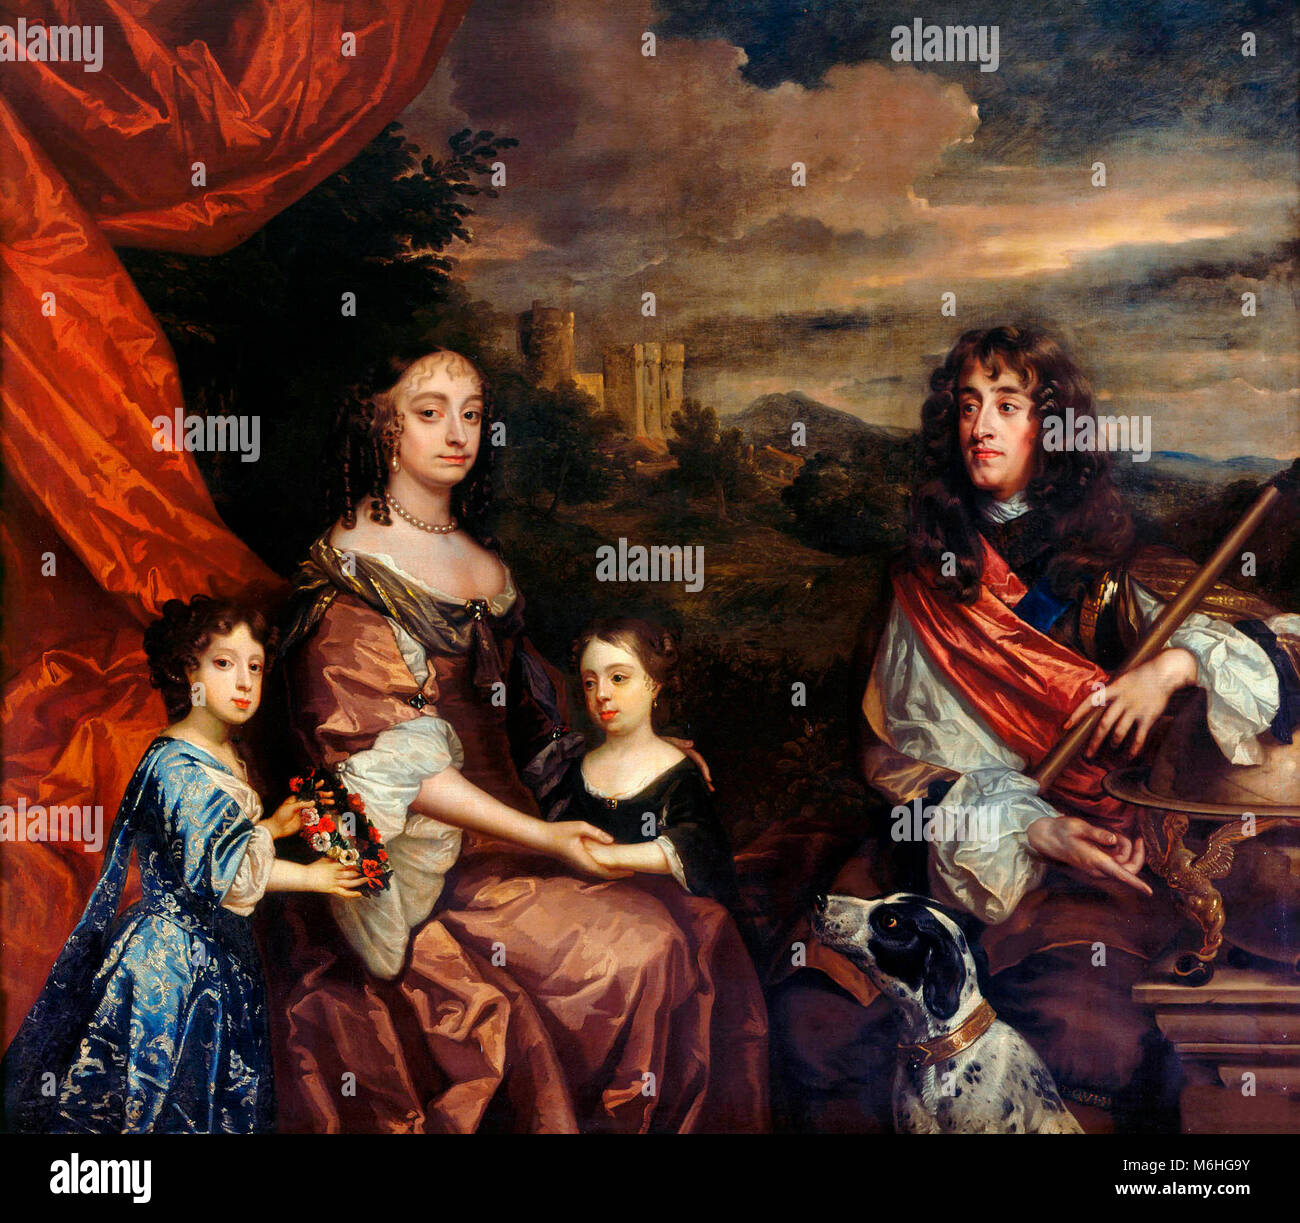 La famille de Jacques, duc de York. Le duc (plus tard le roi Jacques II et VII) et la duchesse d'York (précédemment Anne Hyde) ont été peintes par Peter Lely dans entre 1668 et 1670. Leurs deux filles, Marie (à gauche) et Anne (à droite), plus tard la reine Marie II et de la Reine Anne, ont été ajoutés par Benedetto Gennari en ou après 1680. Le Château de Windsor se trouve à l'arrière-plan. Banque D'Images